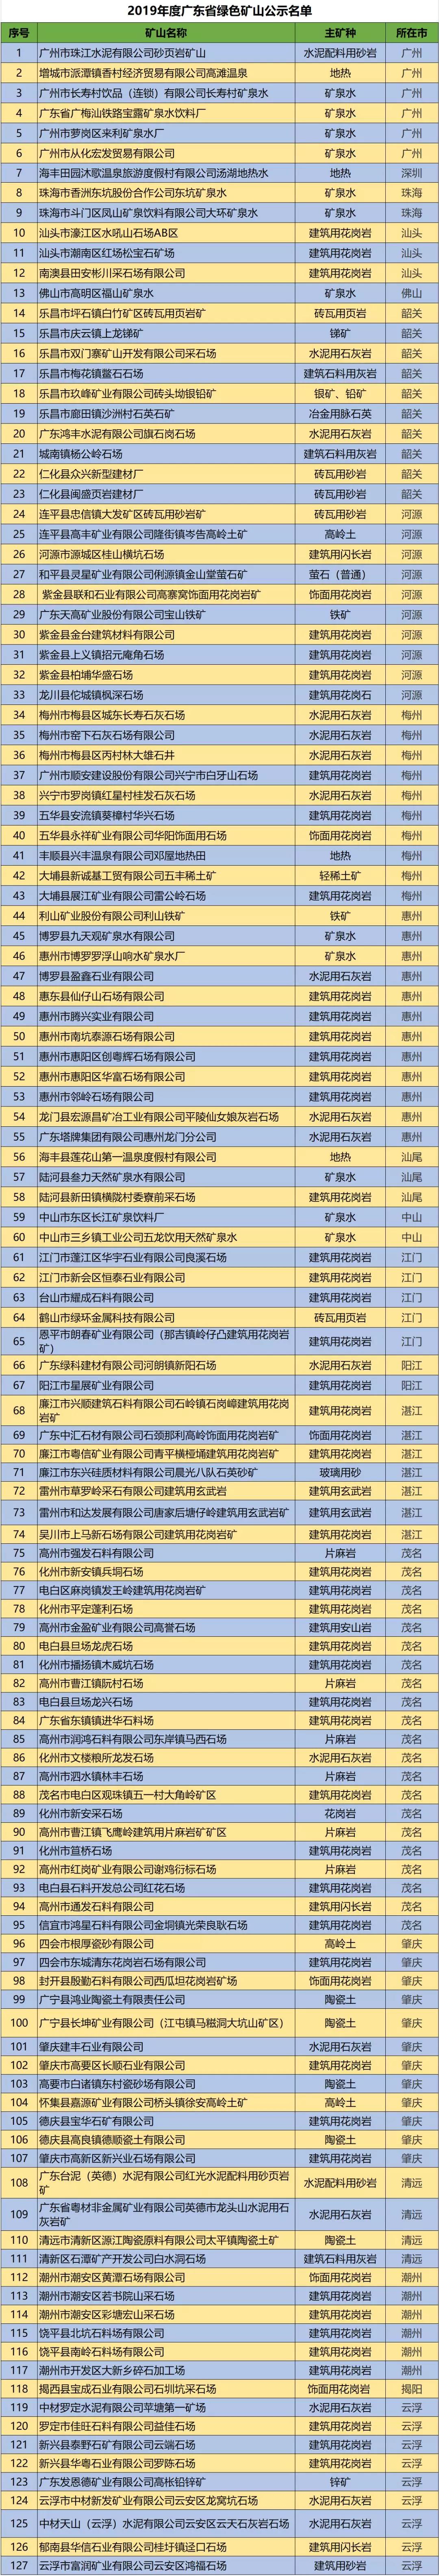 2019年度广东省绿色矿山公示名单